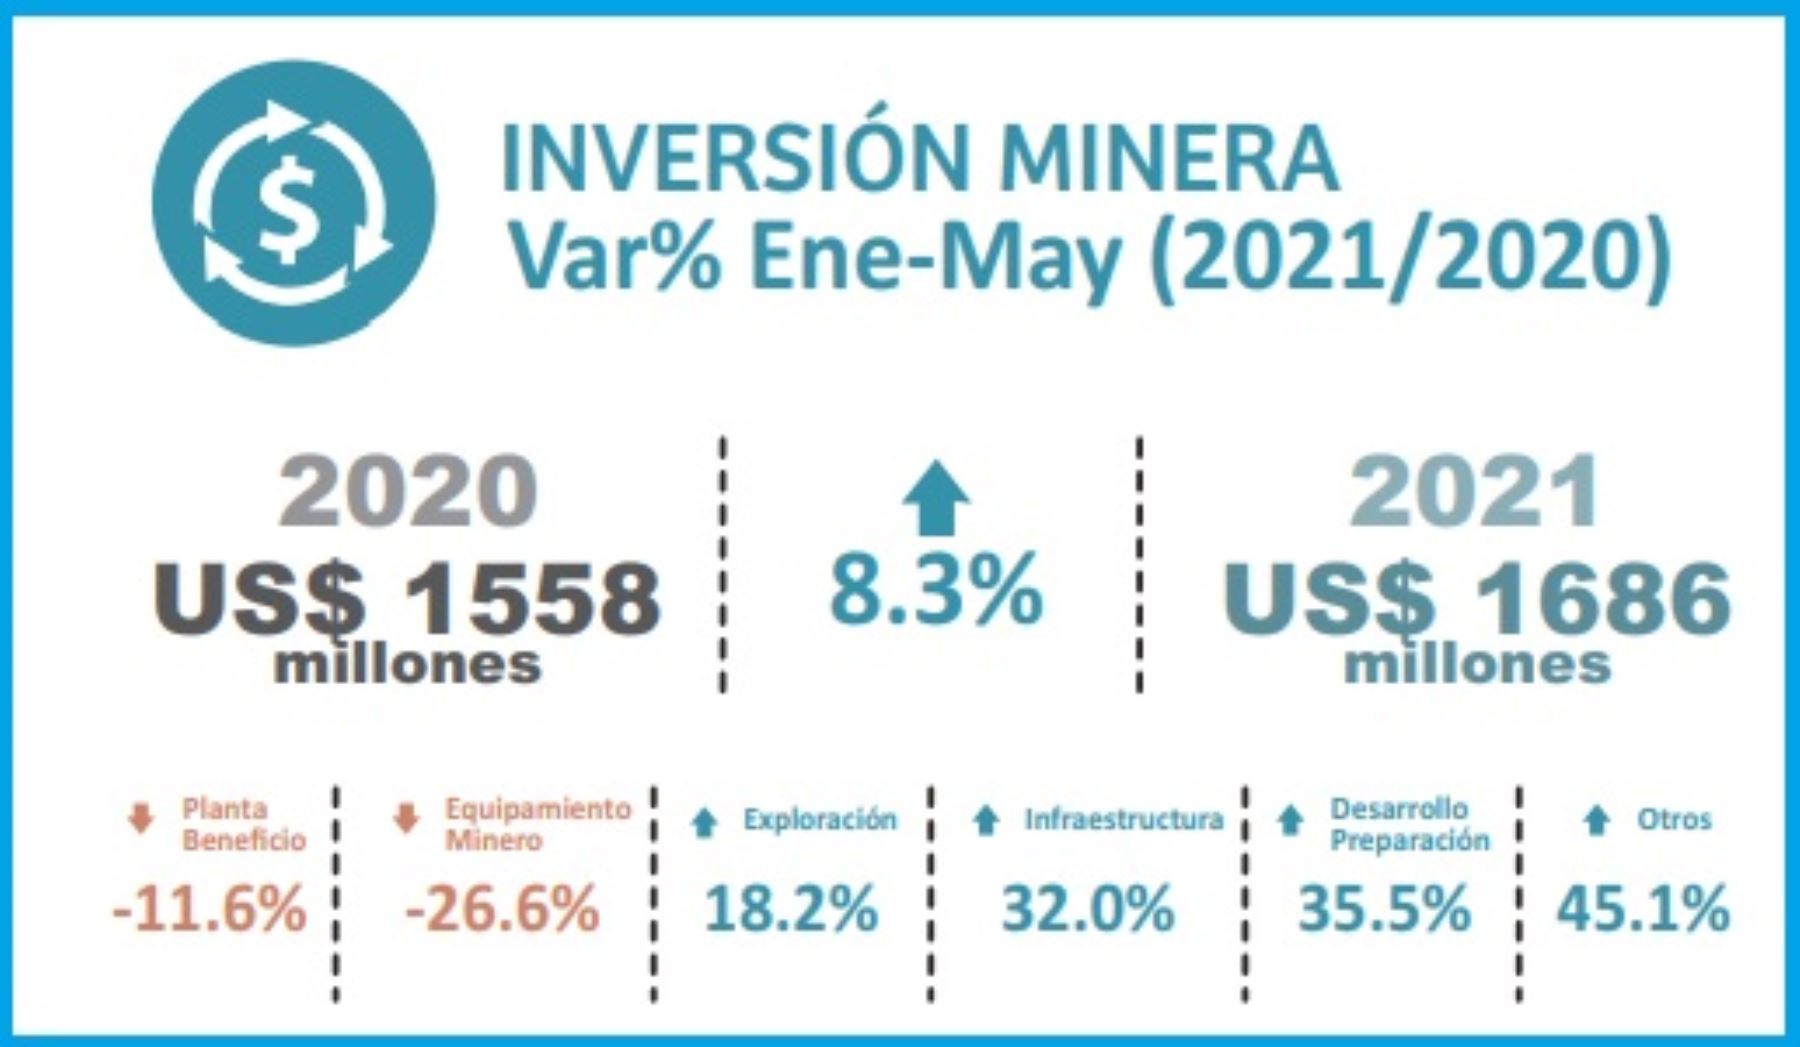 Inversión minera en el Perú crece 8.3% en periodo enero-mayo 2021 |  Noticias | Agencia Peruana de Noticias Andina